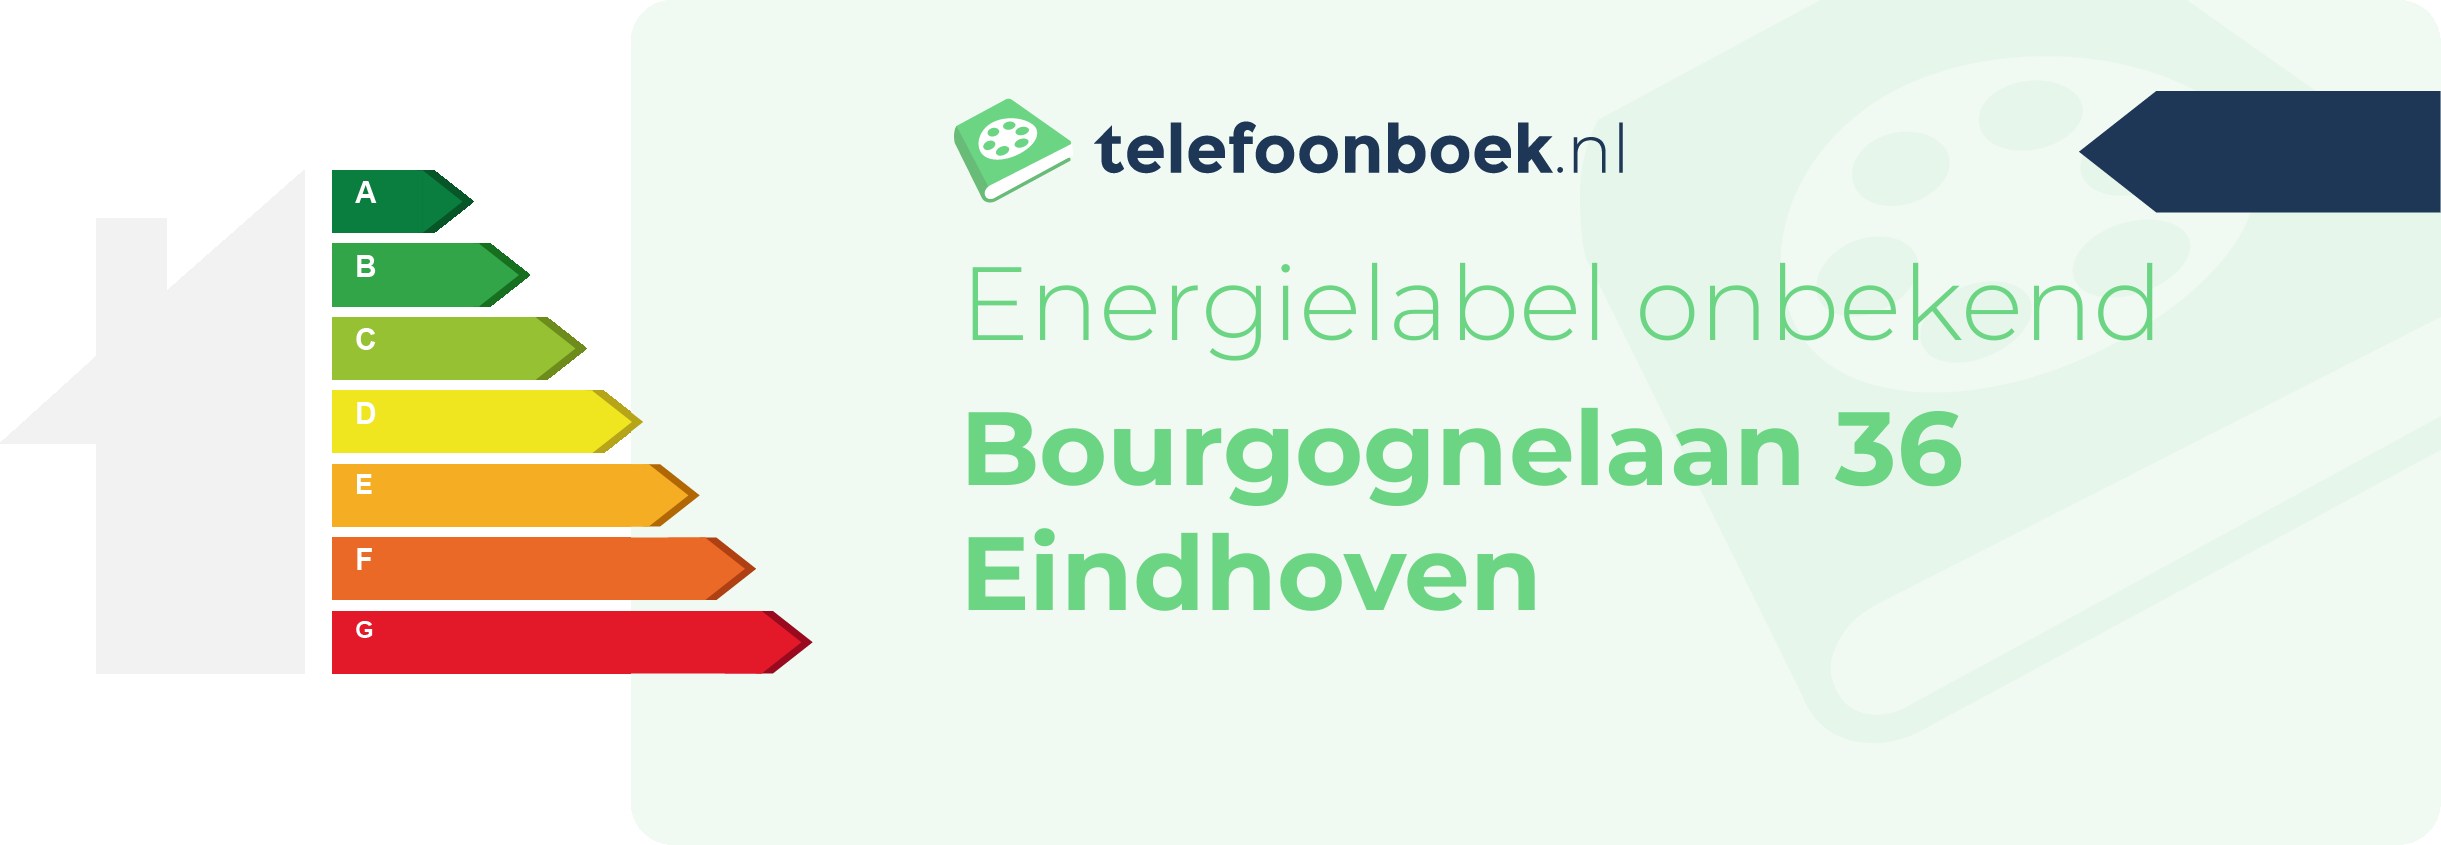 Energielabel Bourgognelaan 36 Eindhoven